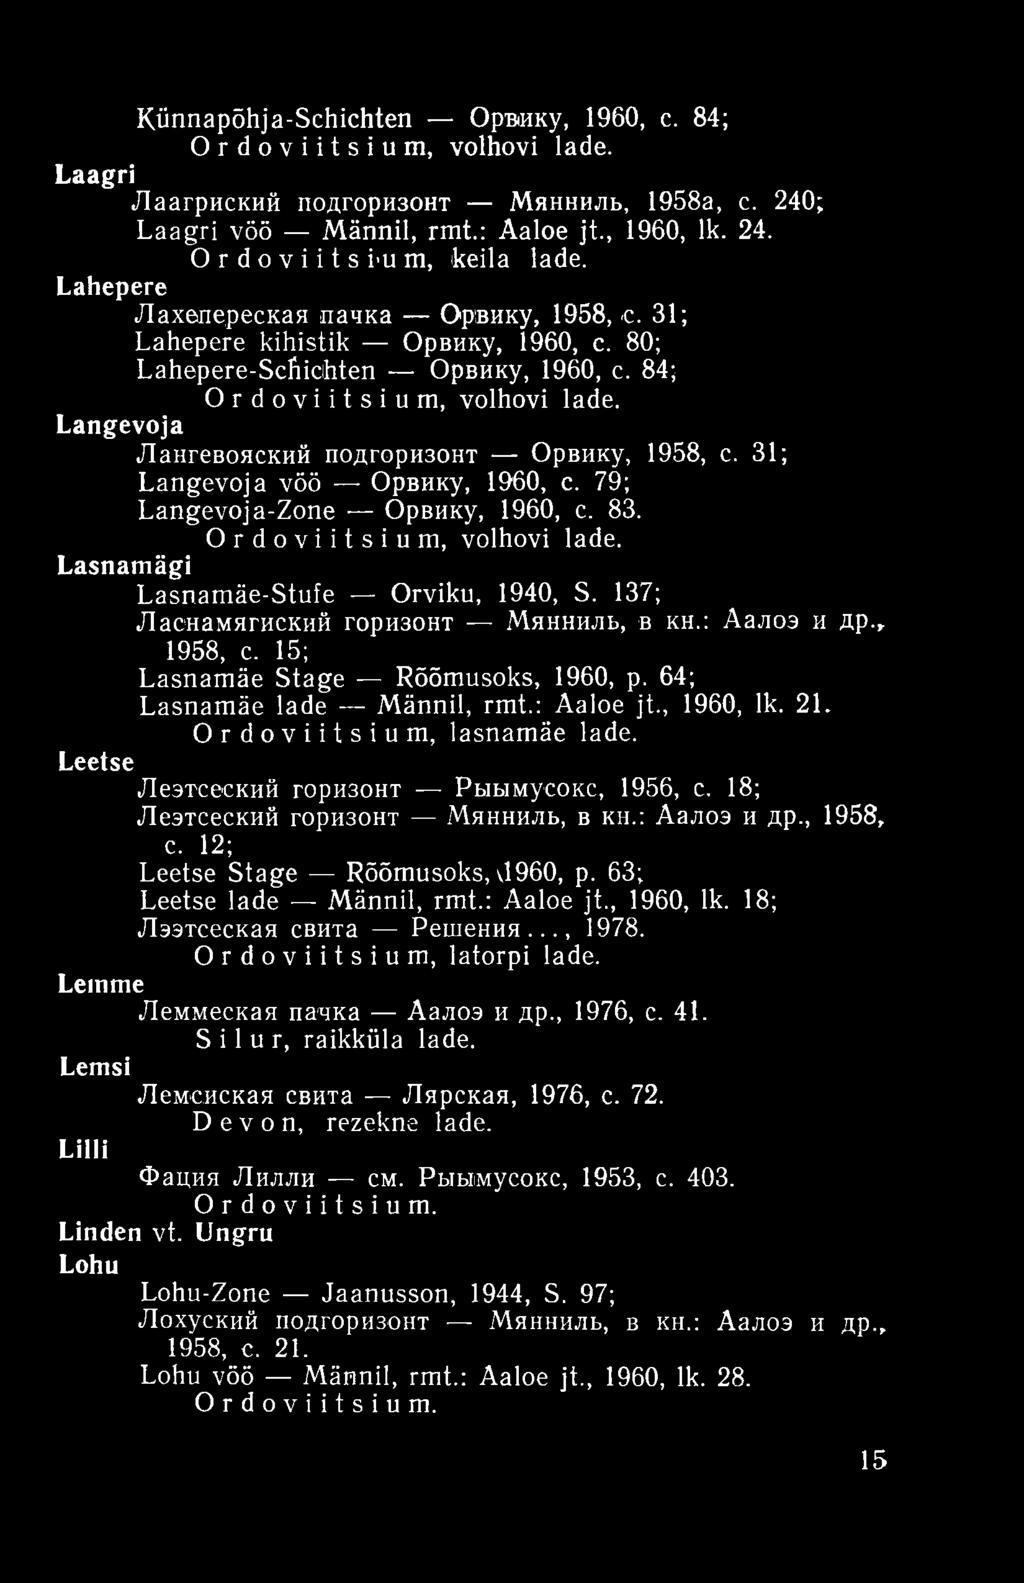 Langevoja Лангевояский подгоризонт Орвику, 1958, с. 31; Langevoja vöö Орвику, 1960, с. 79; Langevoja-Zone Орвику, 1960, с. 83. Ordoviitsium, volhovi lade. Lasnamägi Lasnamäe-Stufe Orviku, 1940, S.